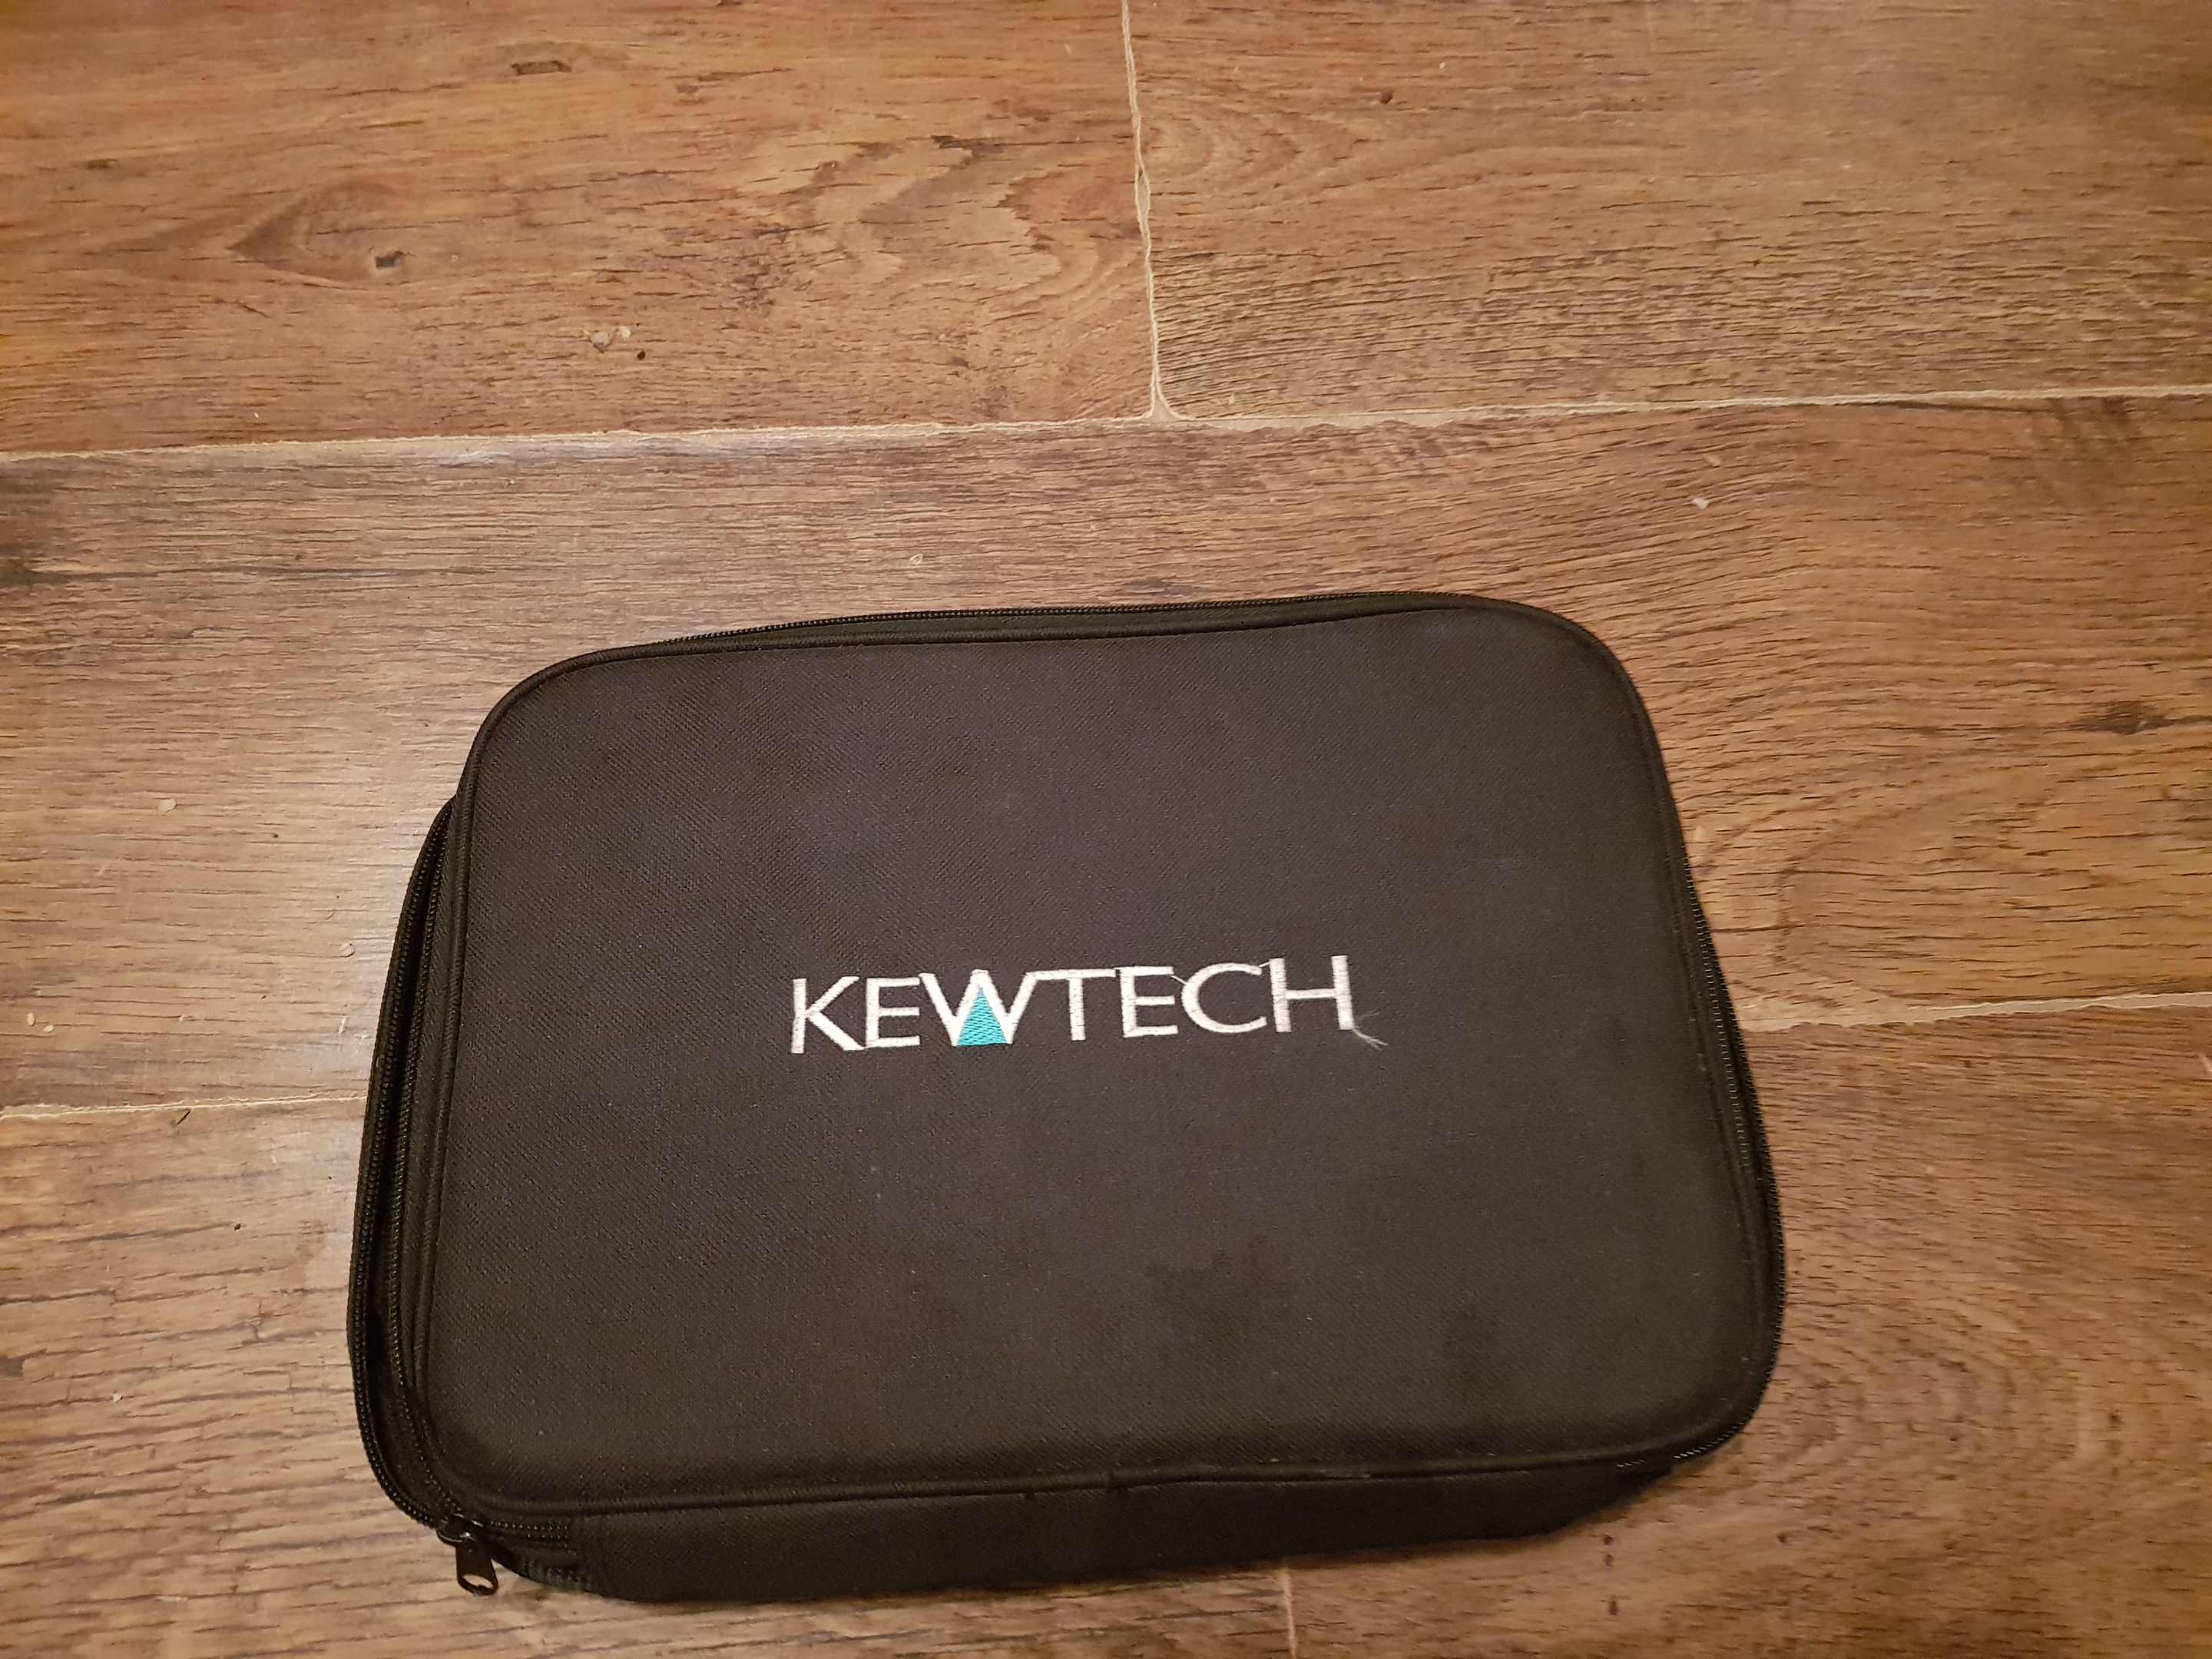 Kewtech test leads for sale 20181103_195414 - EletriciansForums.net